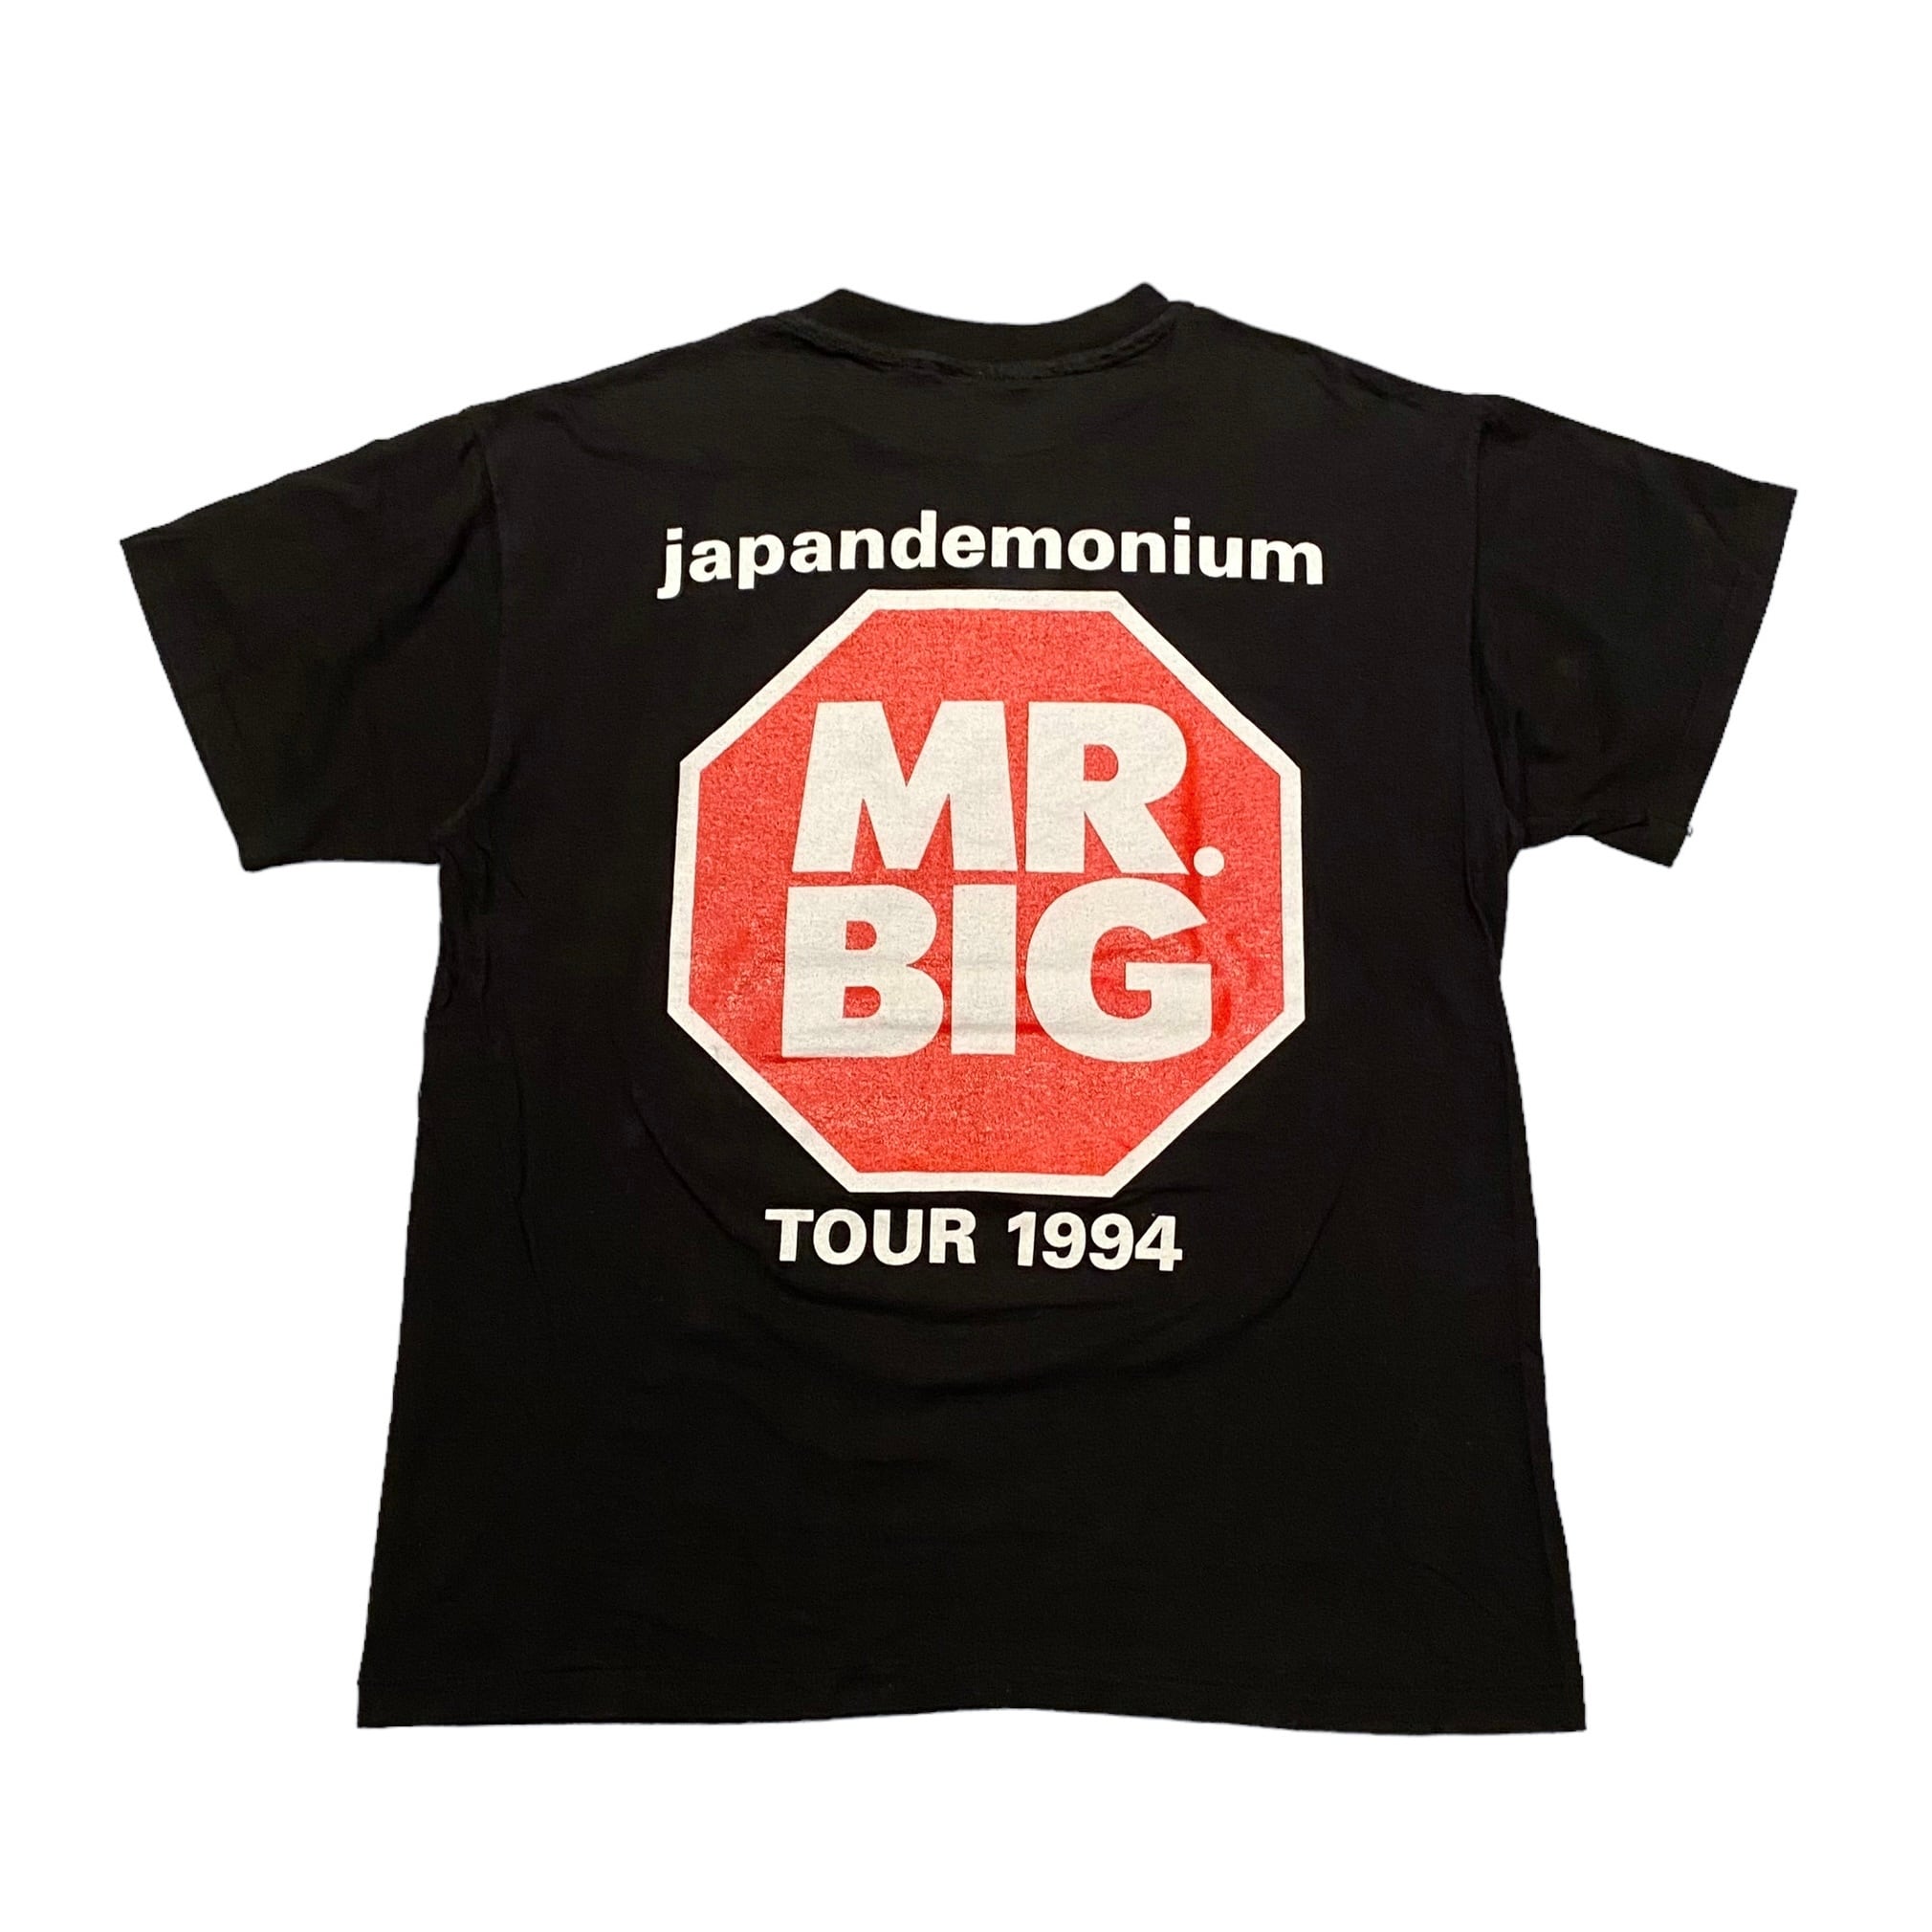 USA製 デッドストック MR.BIG ミスタービッグ ビンテージ Tシャツ